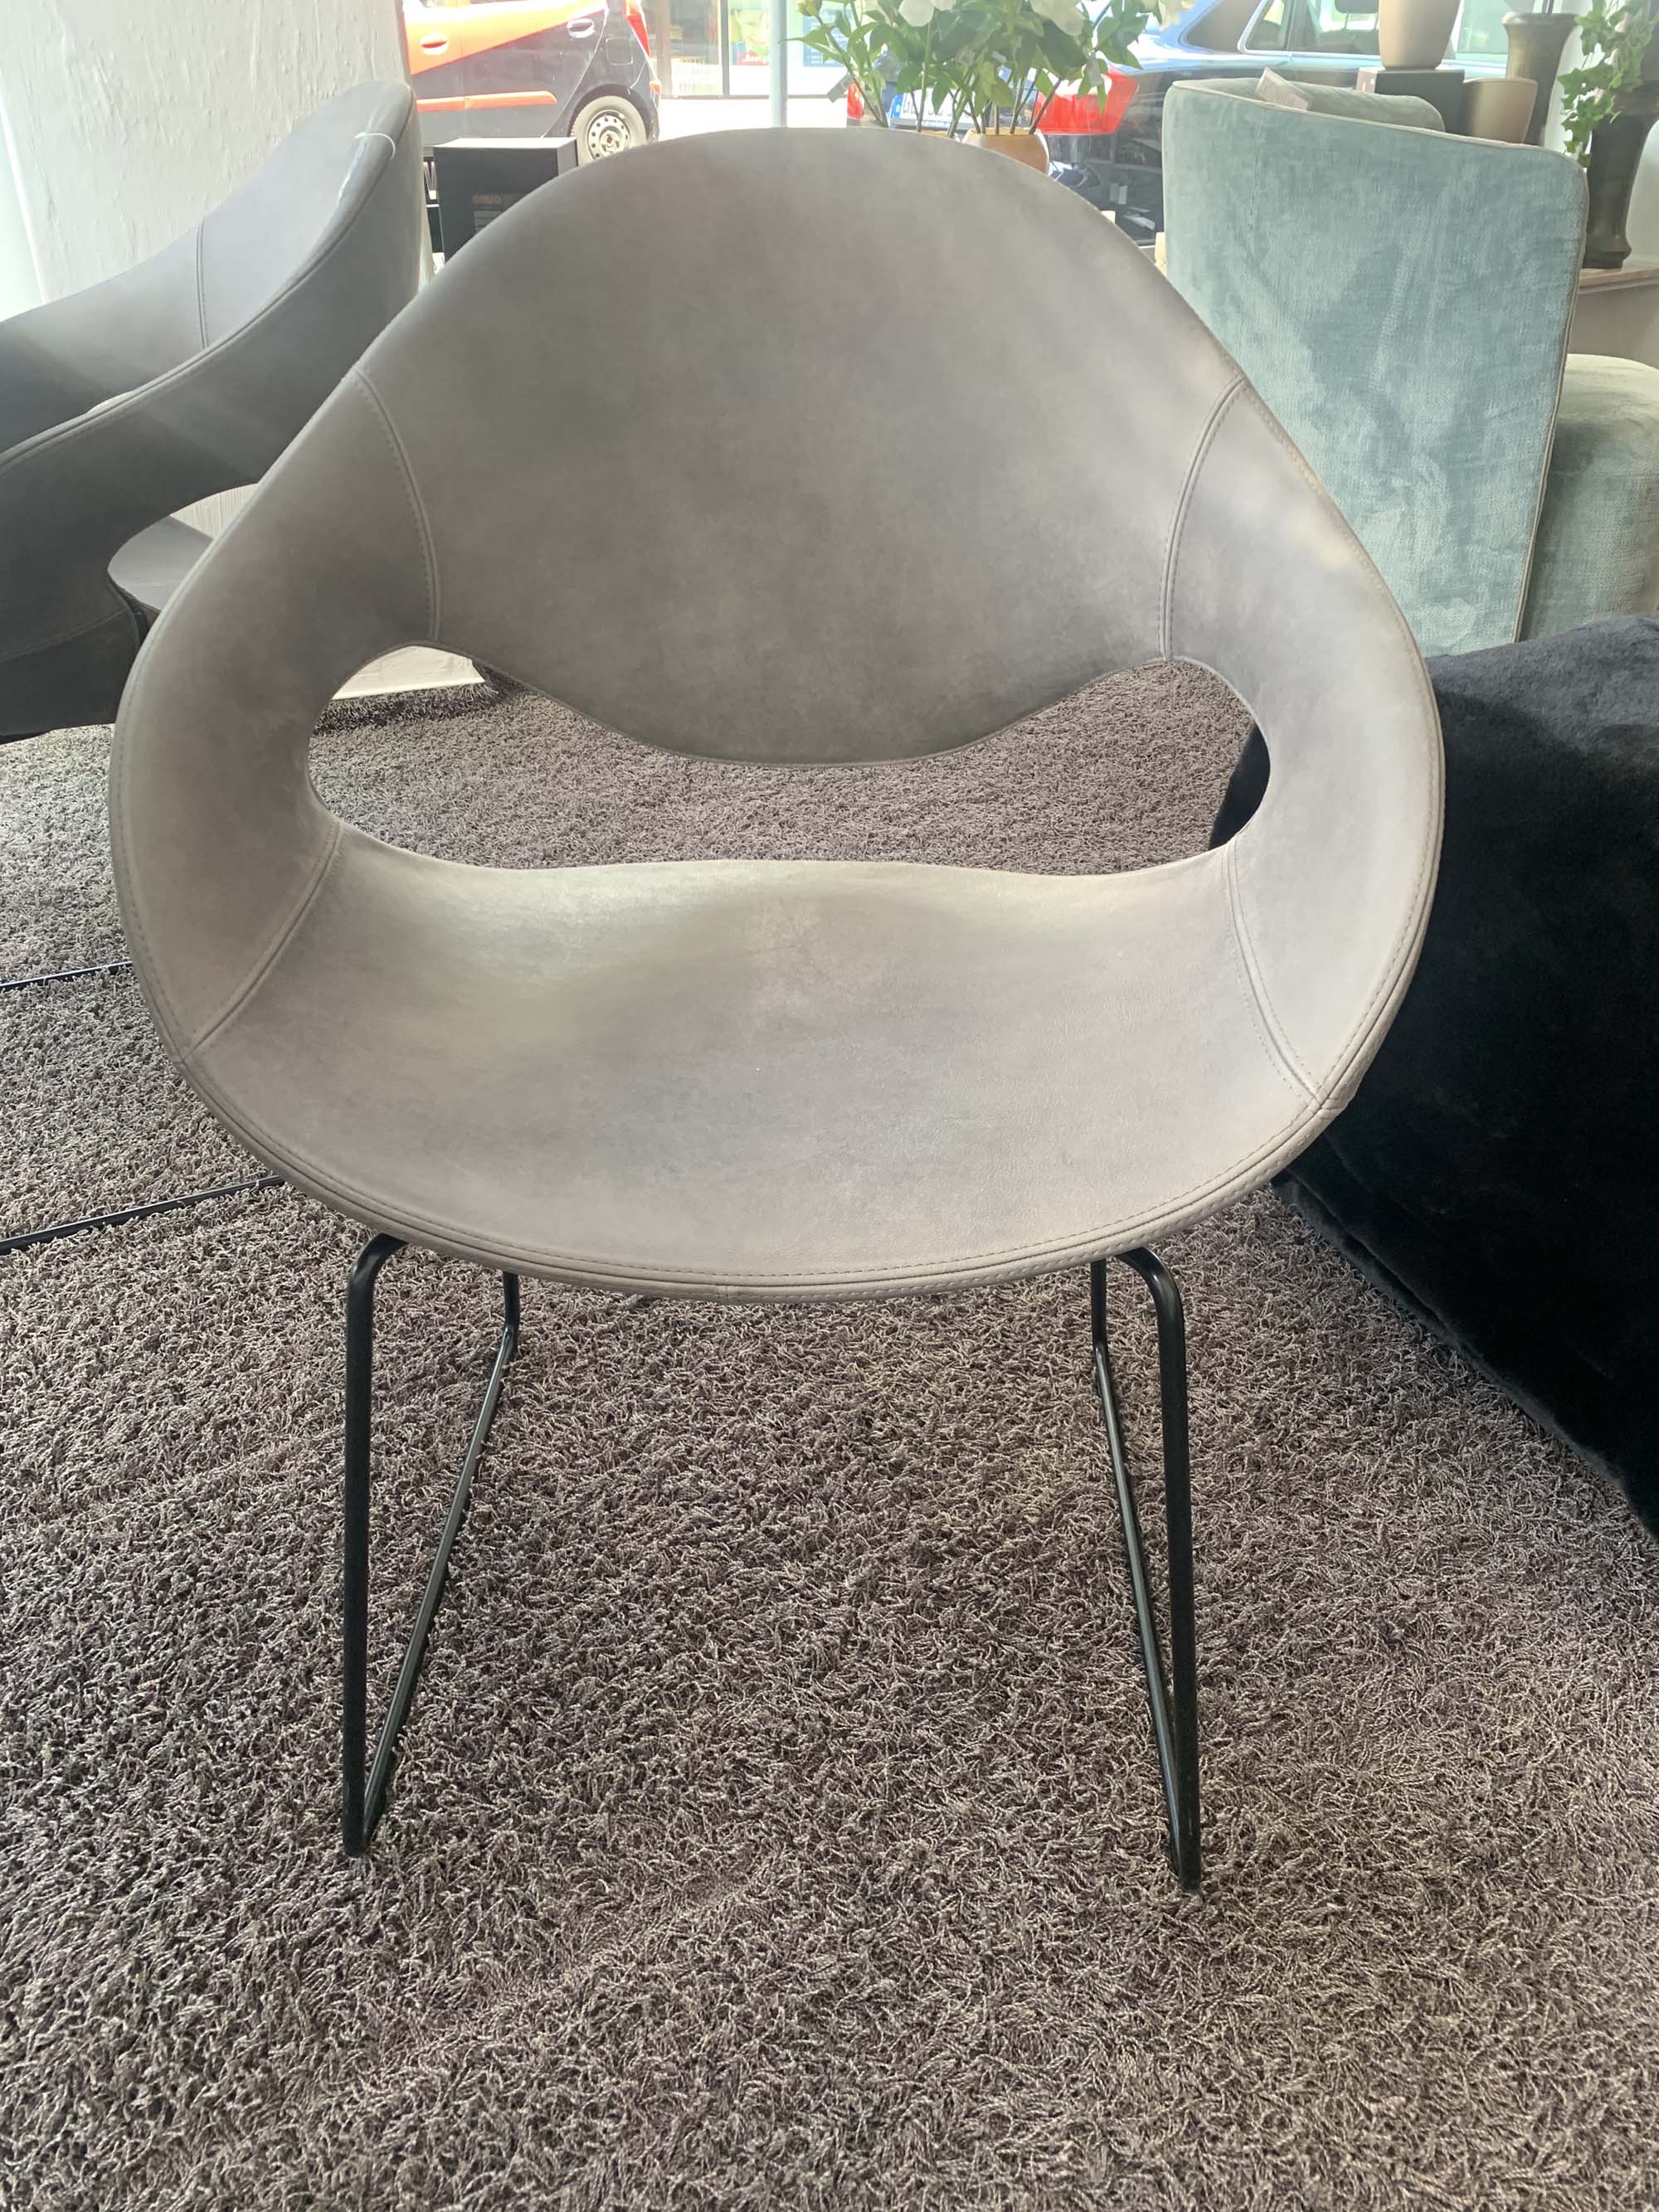 Stuhl in grau von vorne